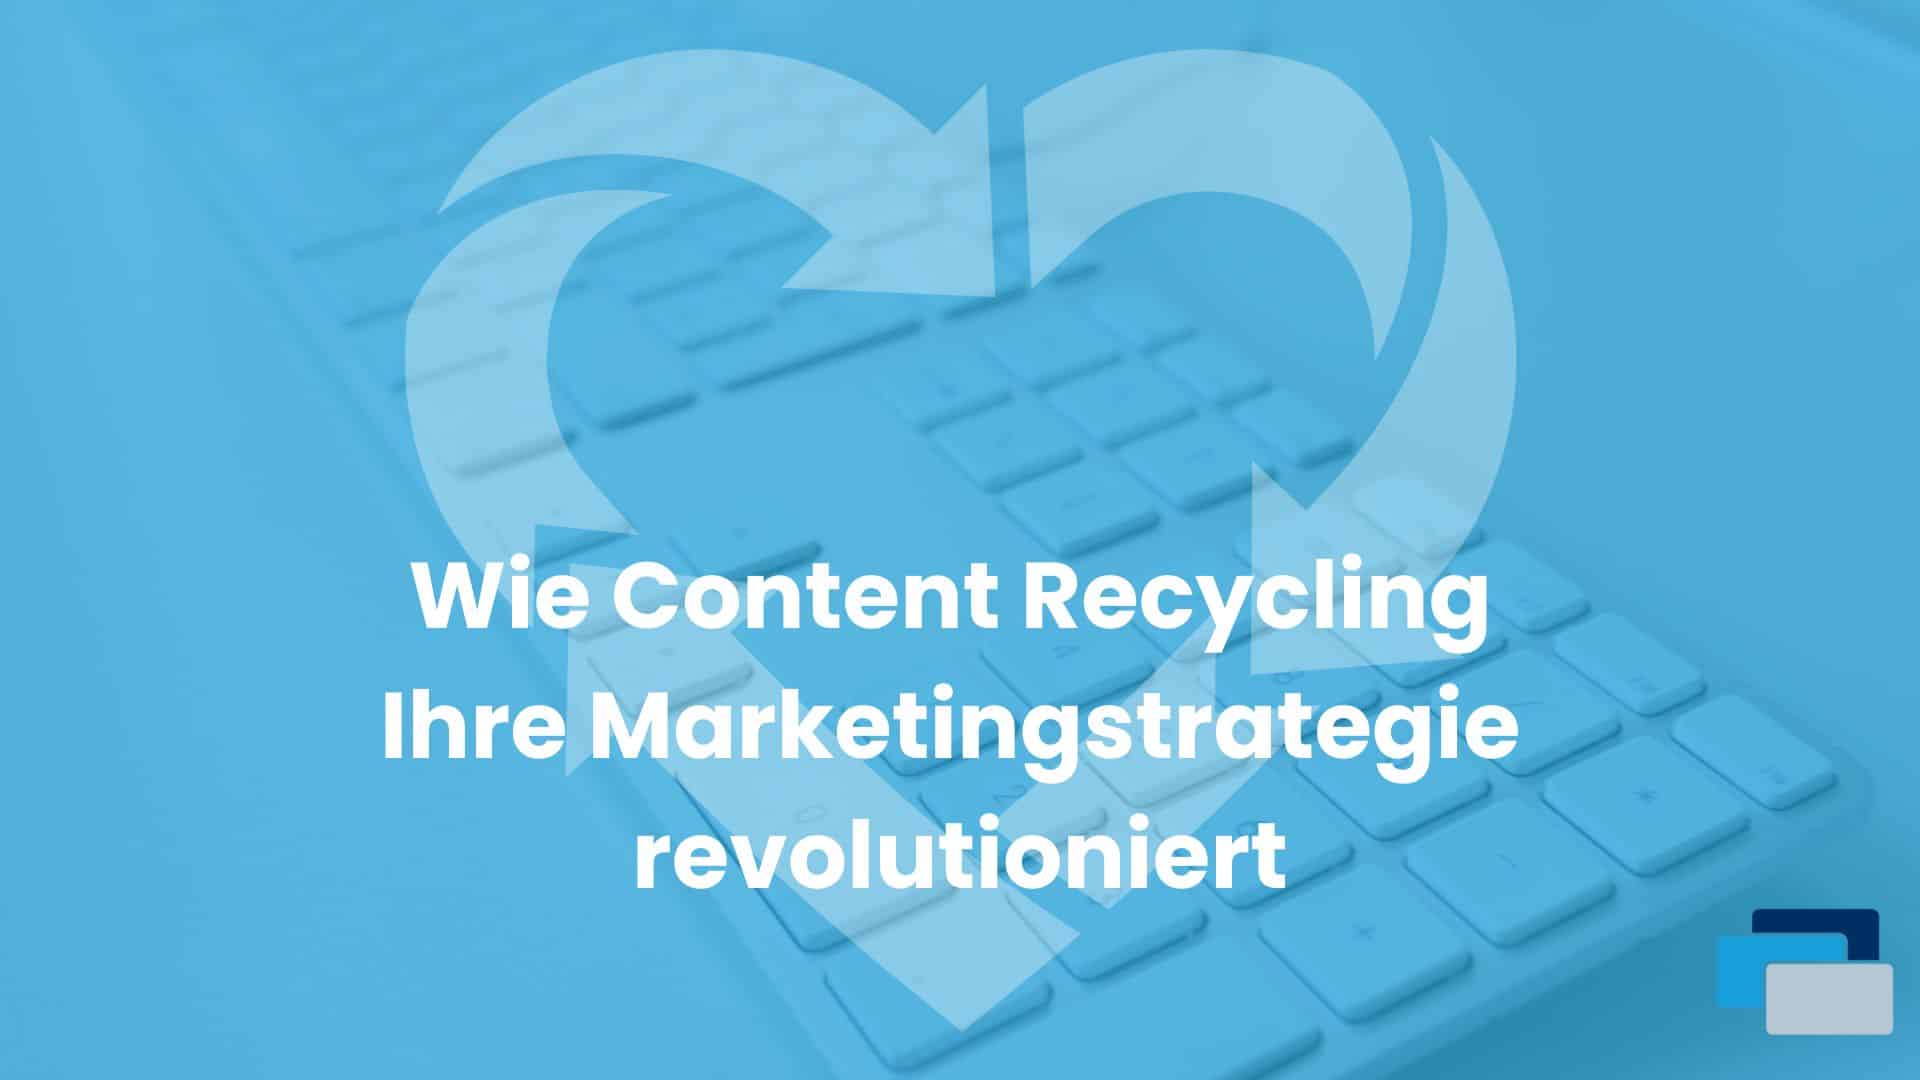 Content Recycling als Teil der Marketing strategie Rang und Namen Chemnitz